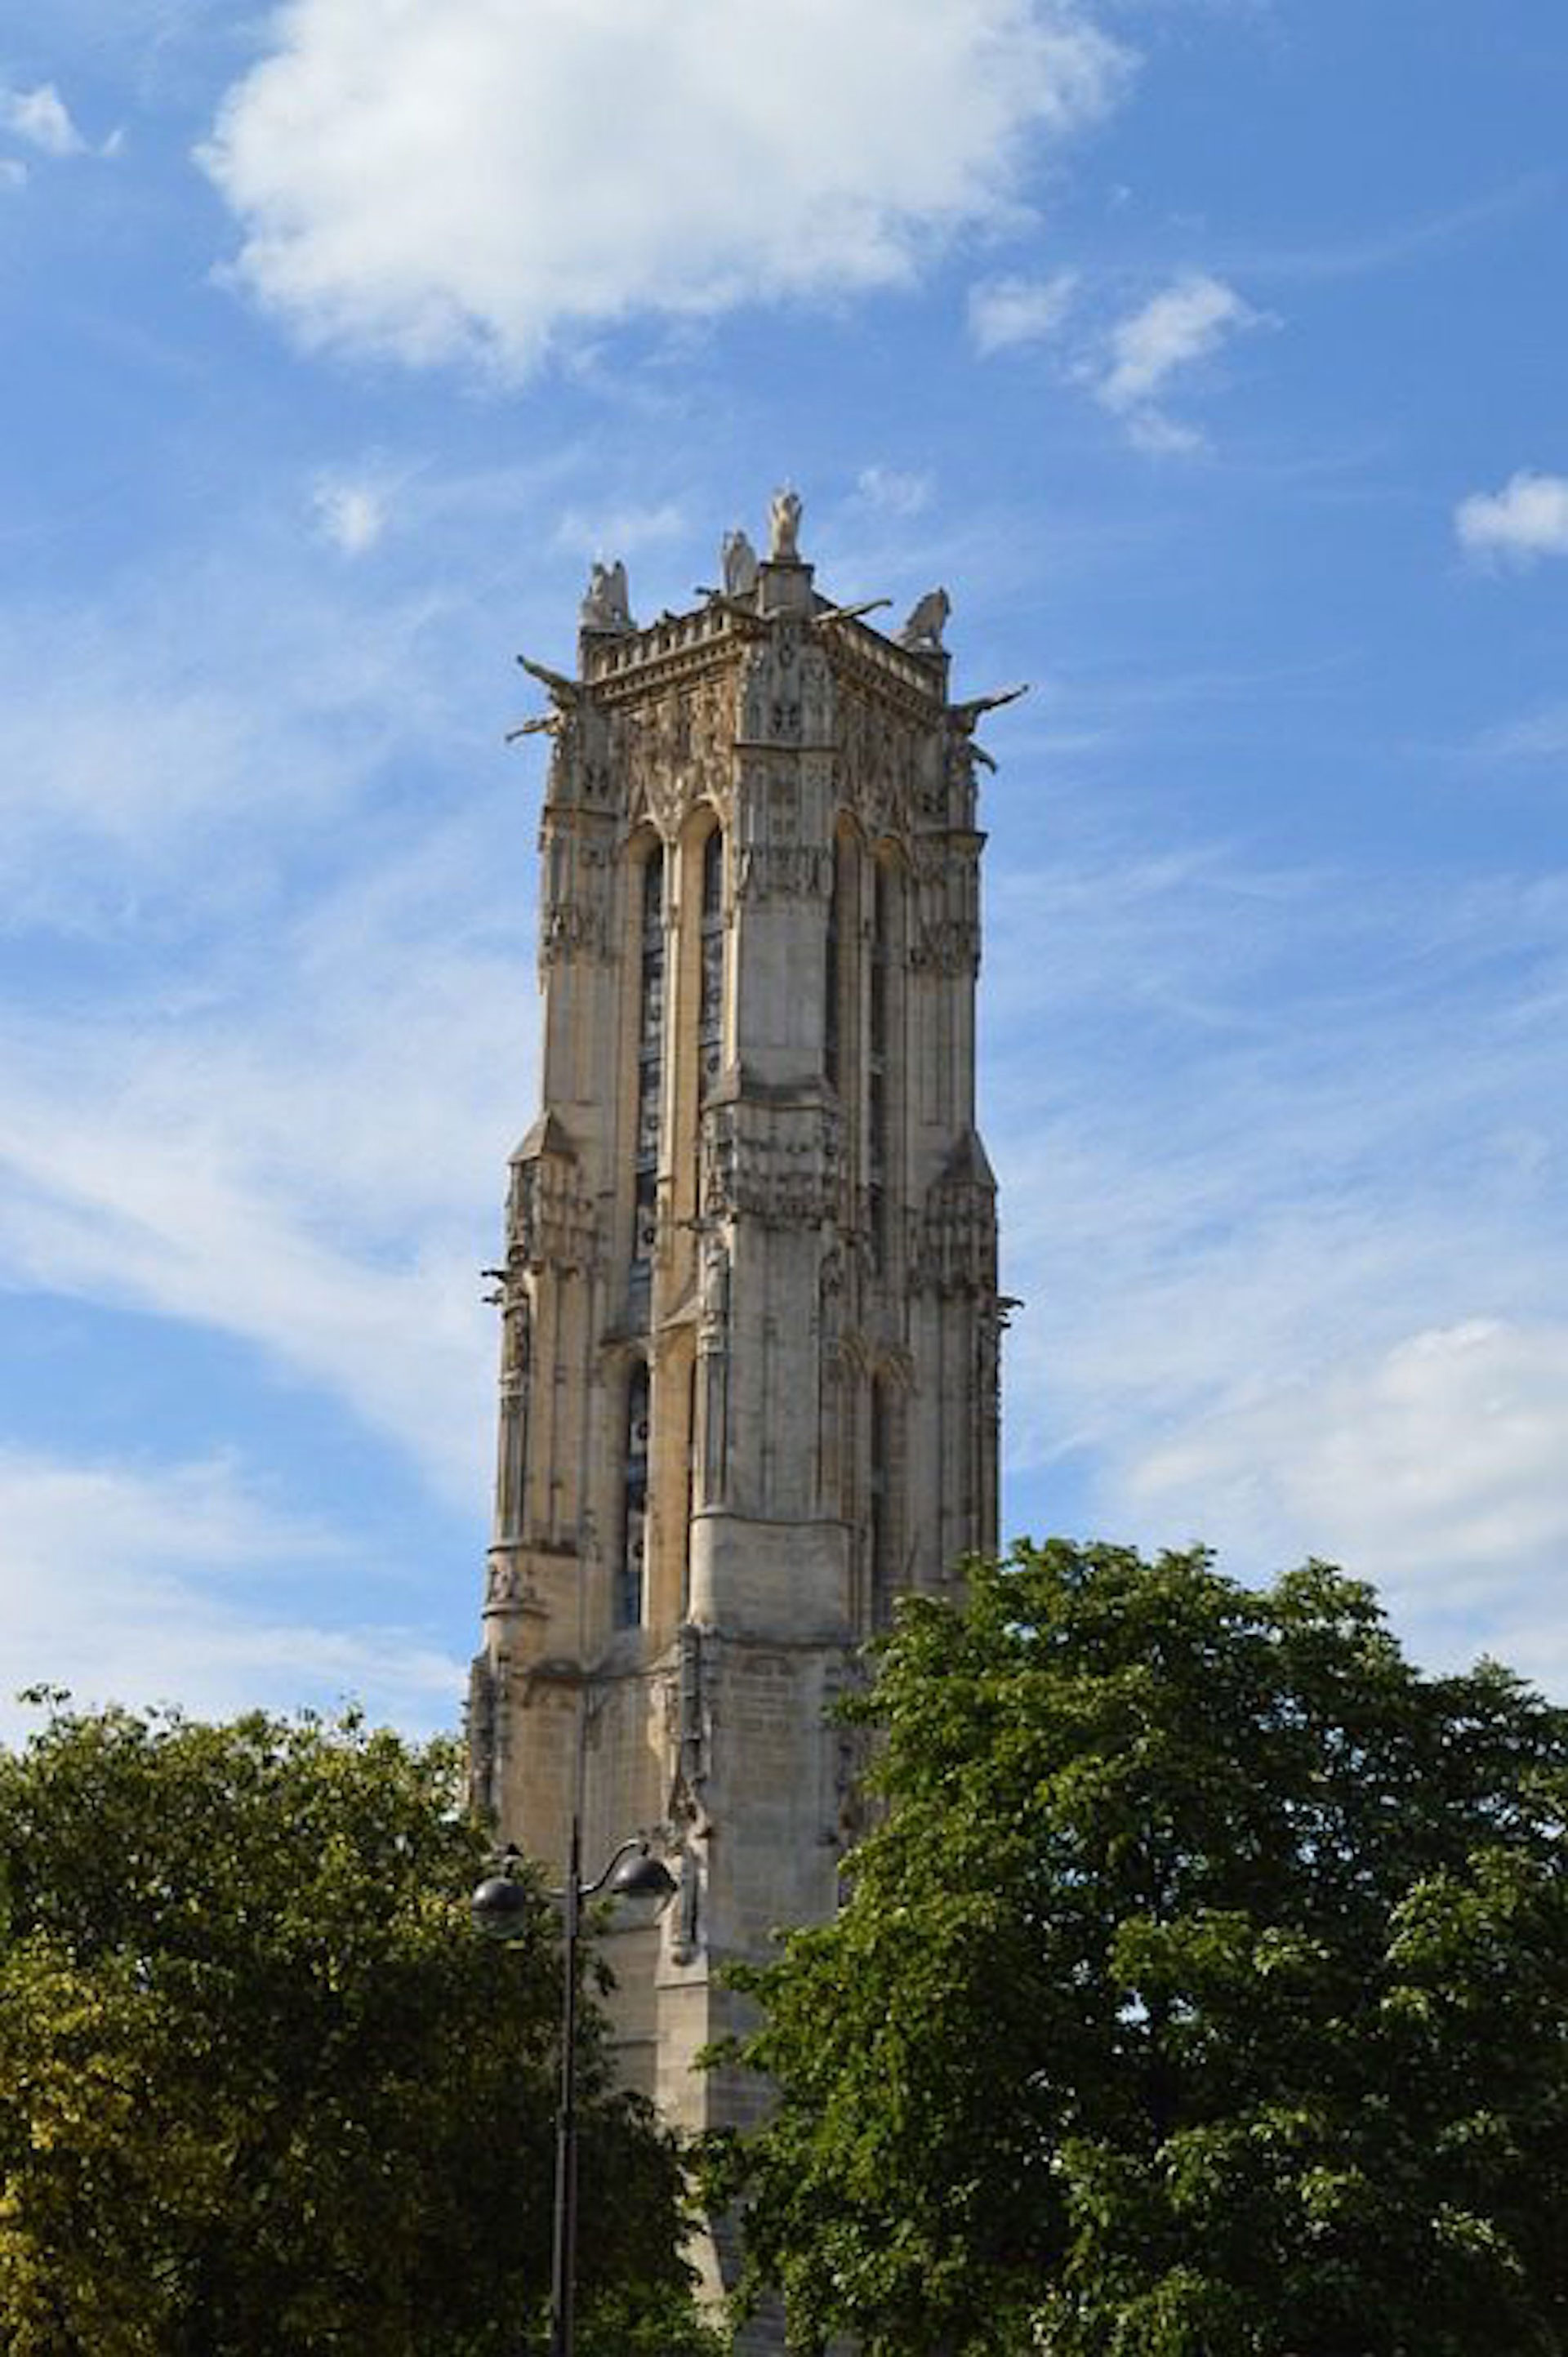 La torre de Saint Jacques es todo lo que queda de una iglesia medieval llamada Eglise Saint-Jacques-de-la-Boucherie, que fue destruida en 1797 durante los turbulentos años de la Revolución Francesa

